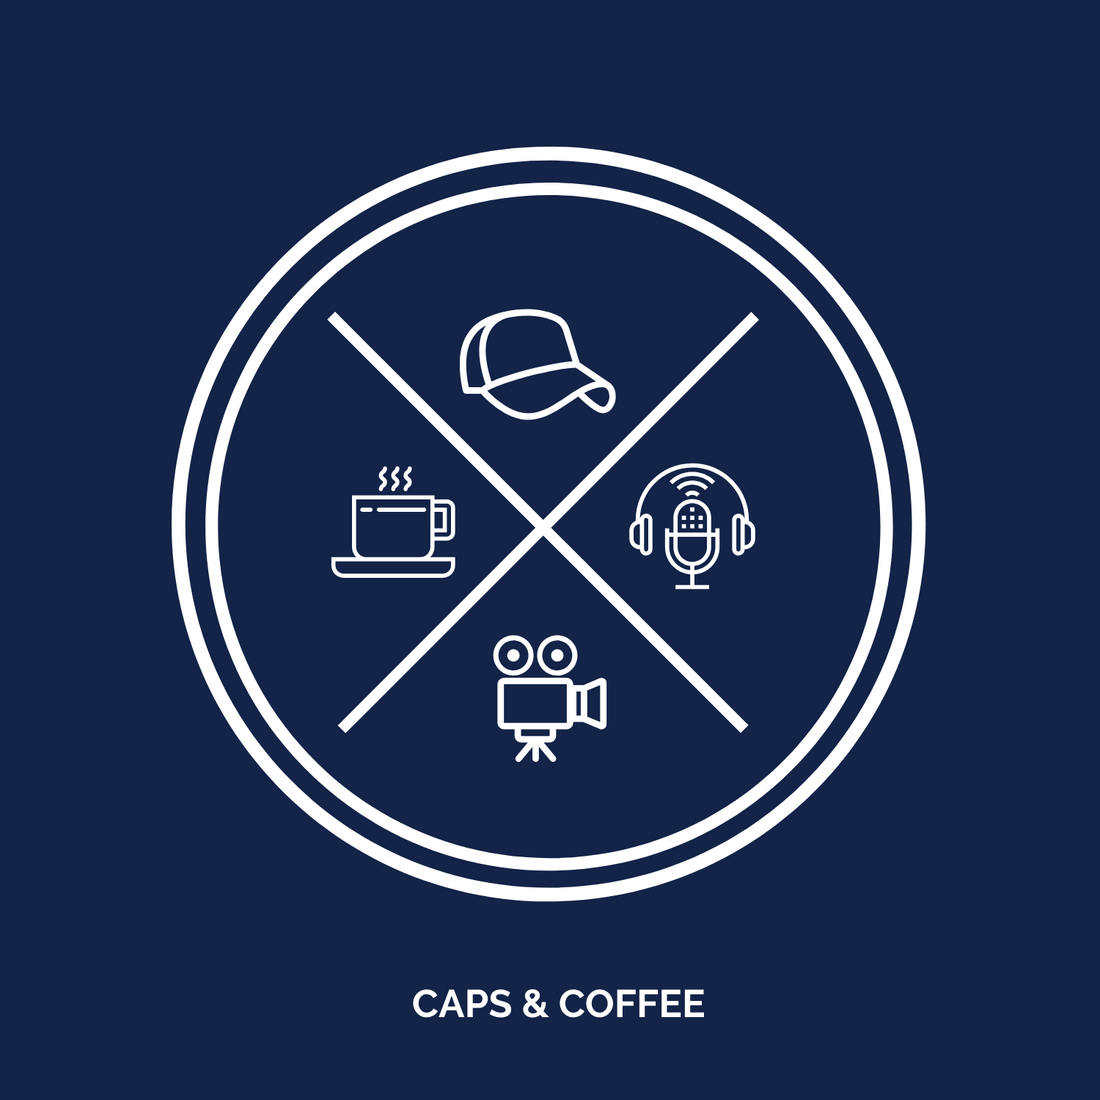 Velkommen til Caps & Coffee!